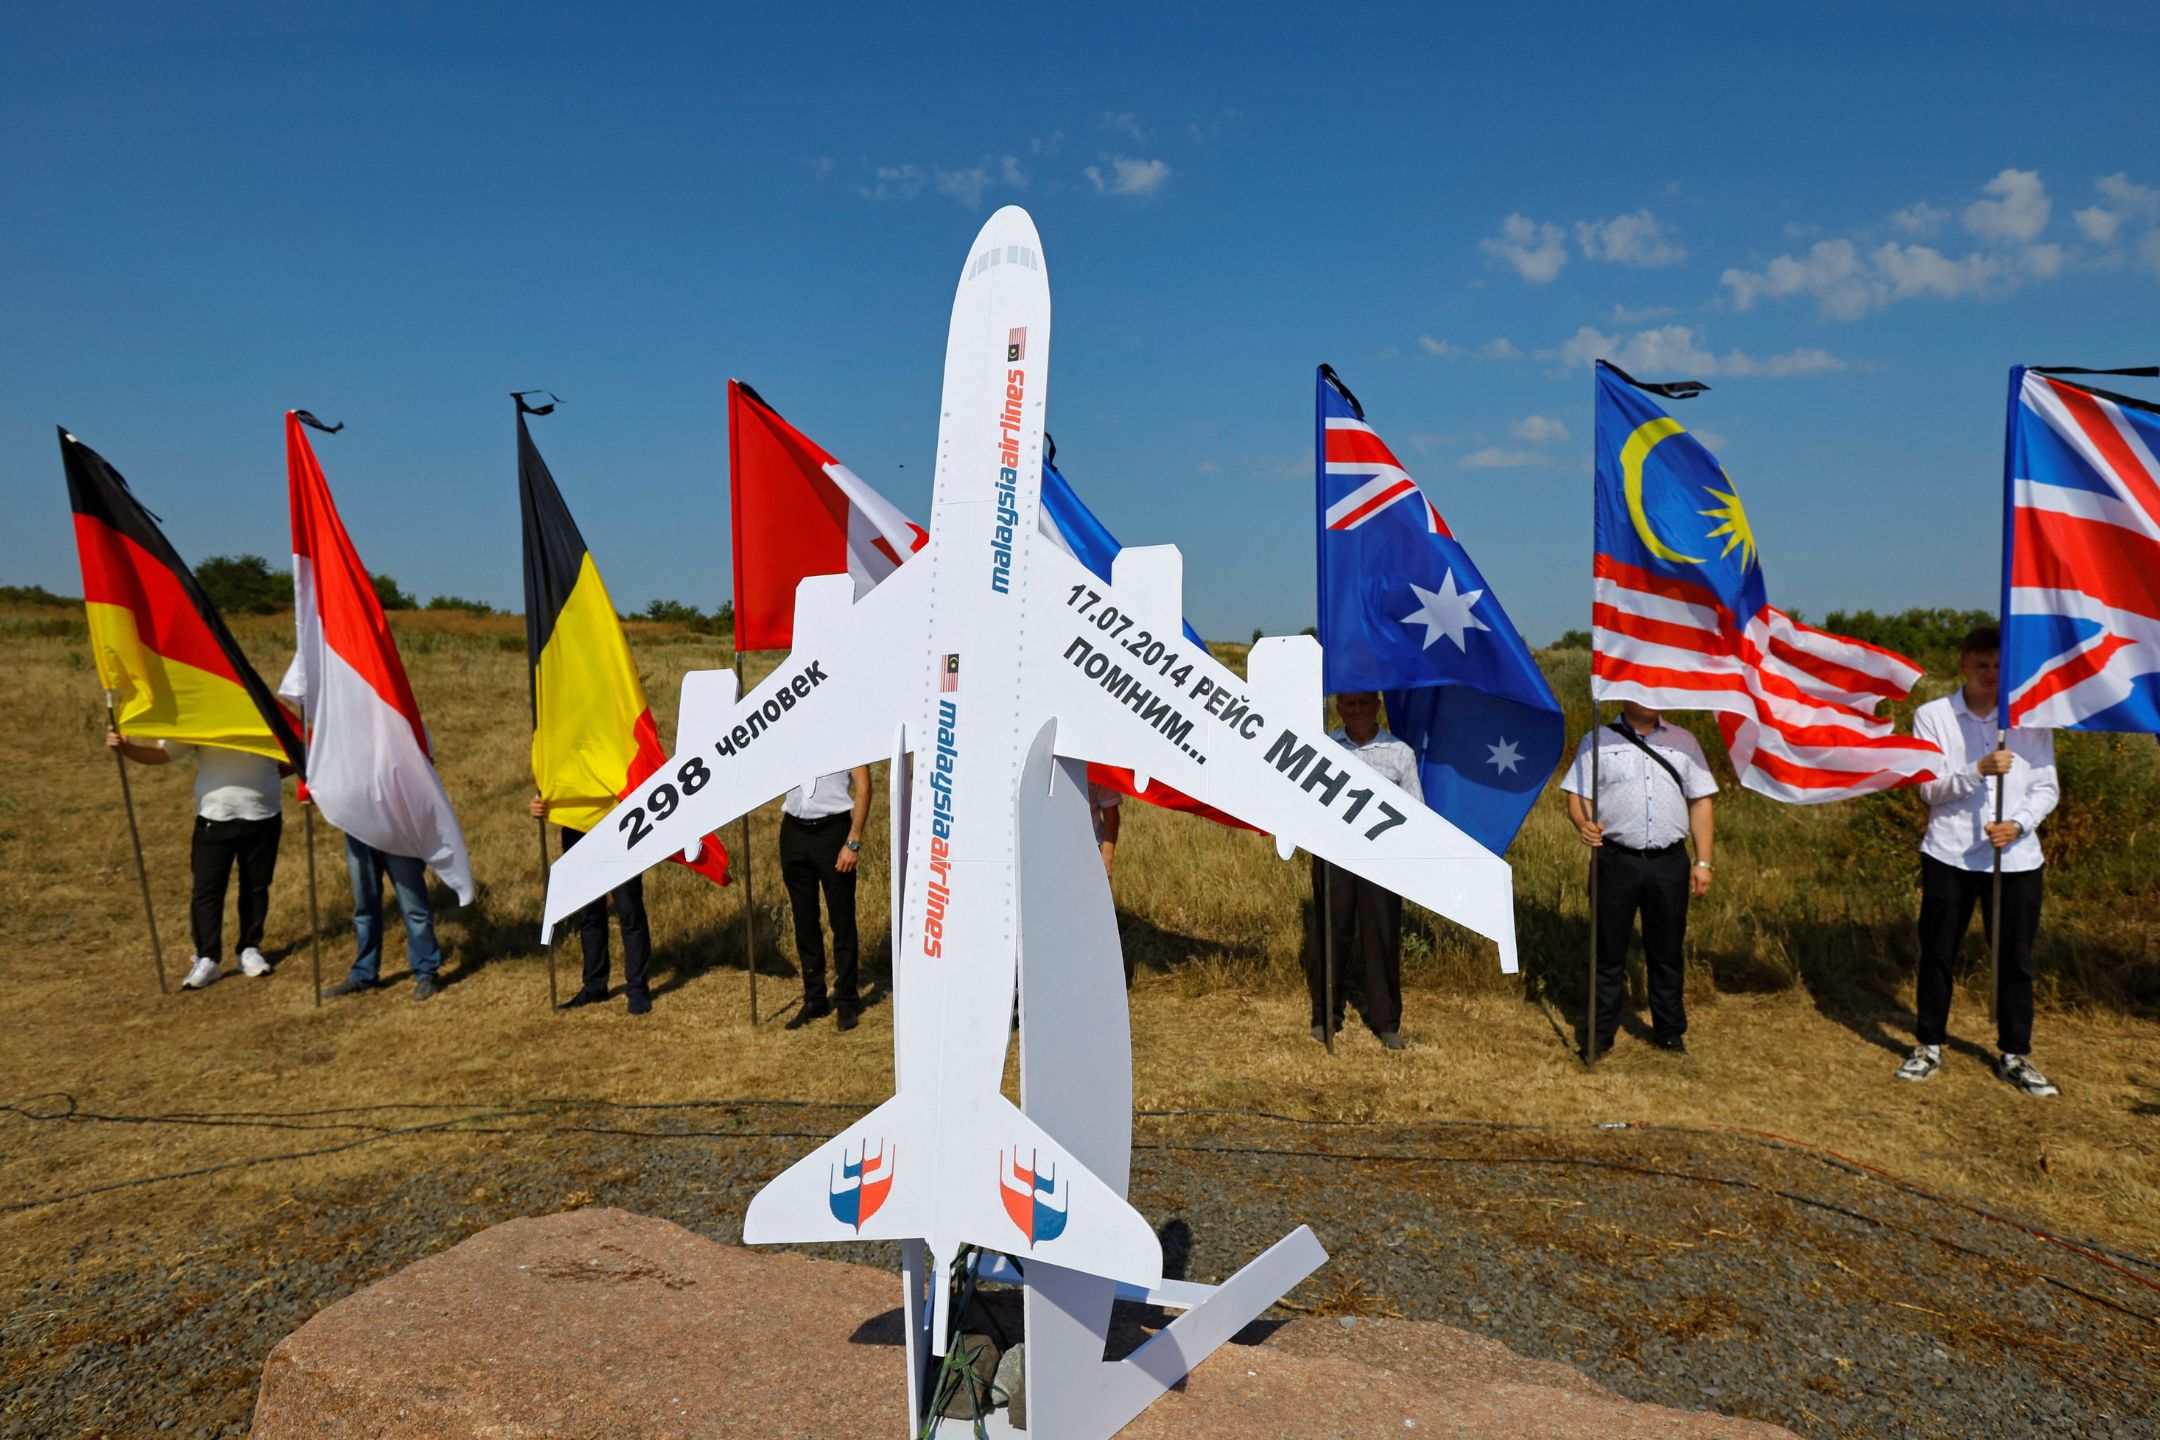 【MH17空难十周年】政府重申依循国际法 为家属寻求正义与真相